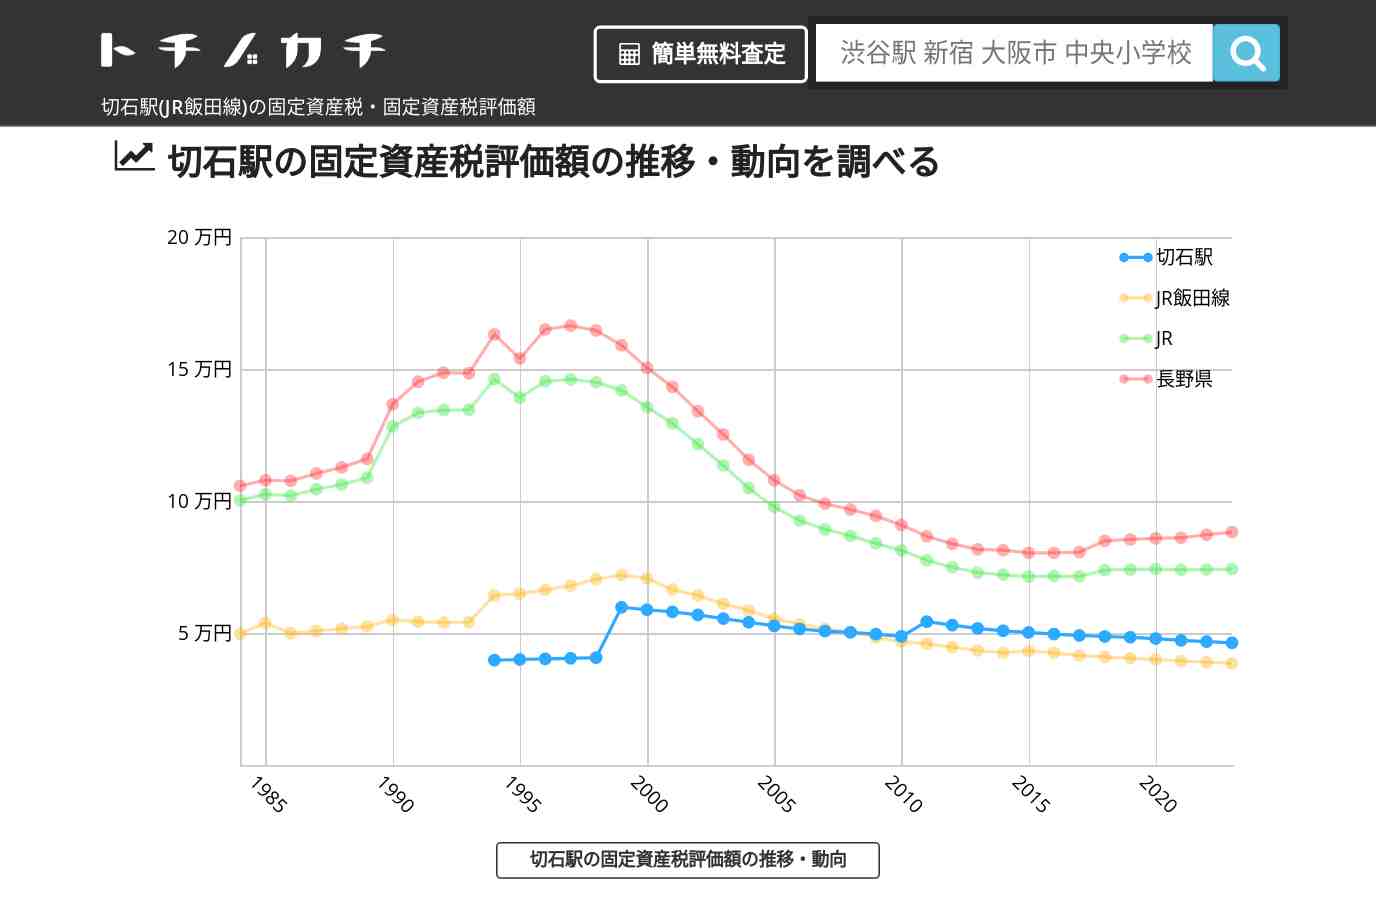 切石駅(JR飯田線)の固定資産税・固定資産税評価額 | トチノカチ